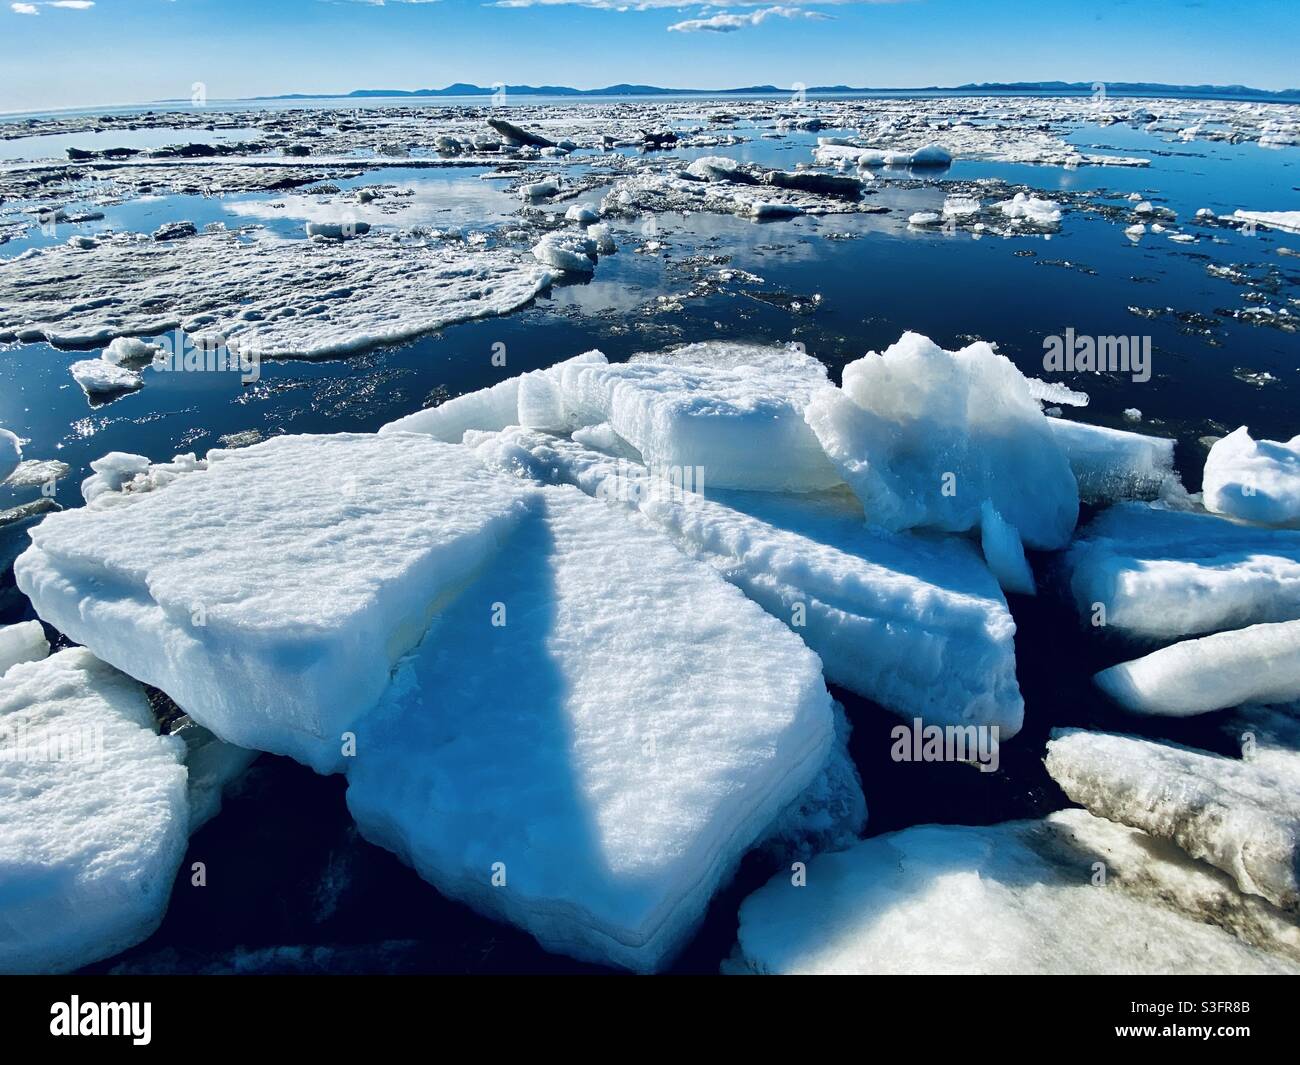 Fonte des glaces de la rupture annuelle de la glace de mer et de rivière dans le son de kotzebue dans l'Arctique de l'Alaska. Kotzebue, Alaska, États-Unis Banque D'Images